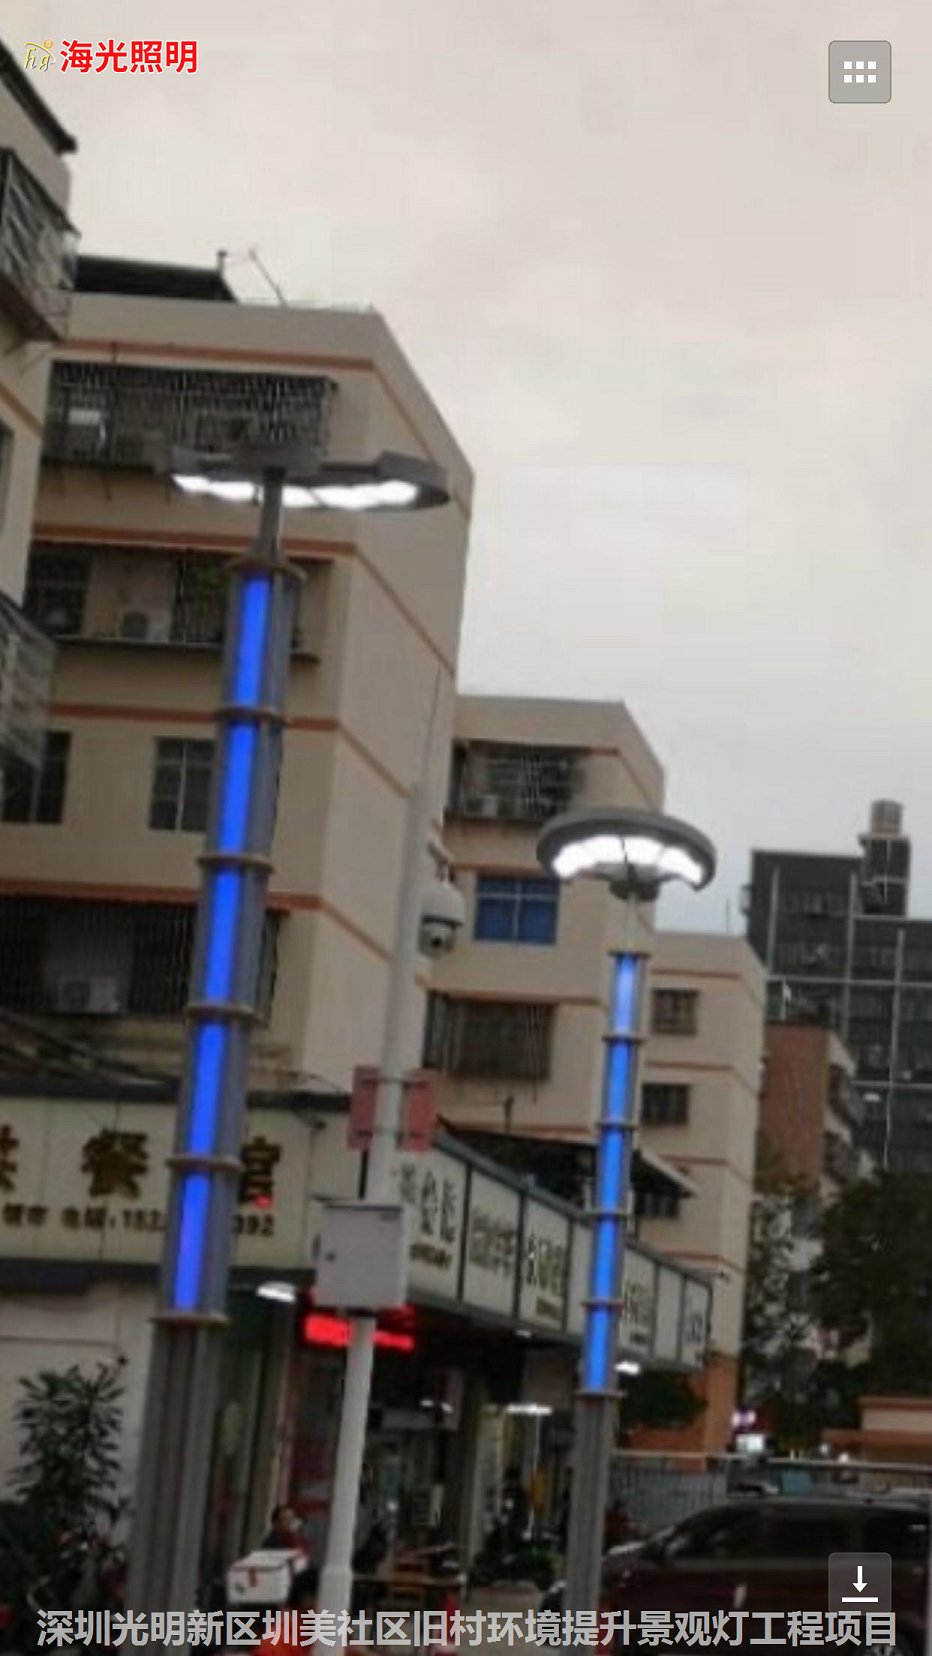 深圳市光明新区圳美社区旧村环境提升景观灯工程项目